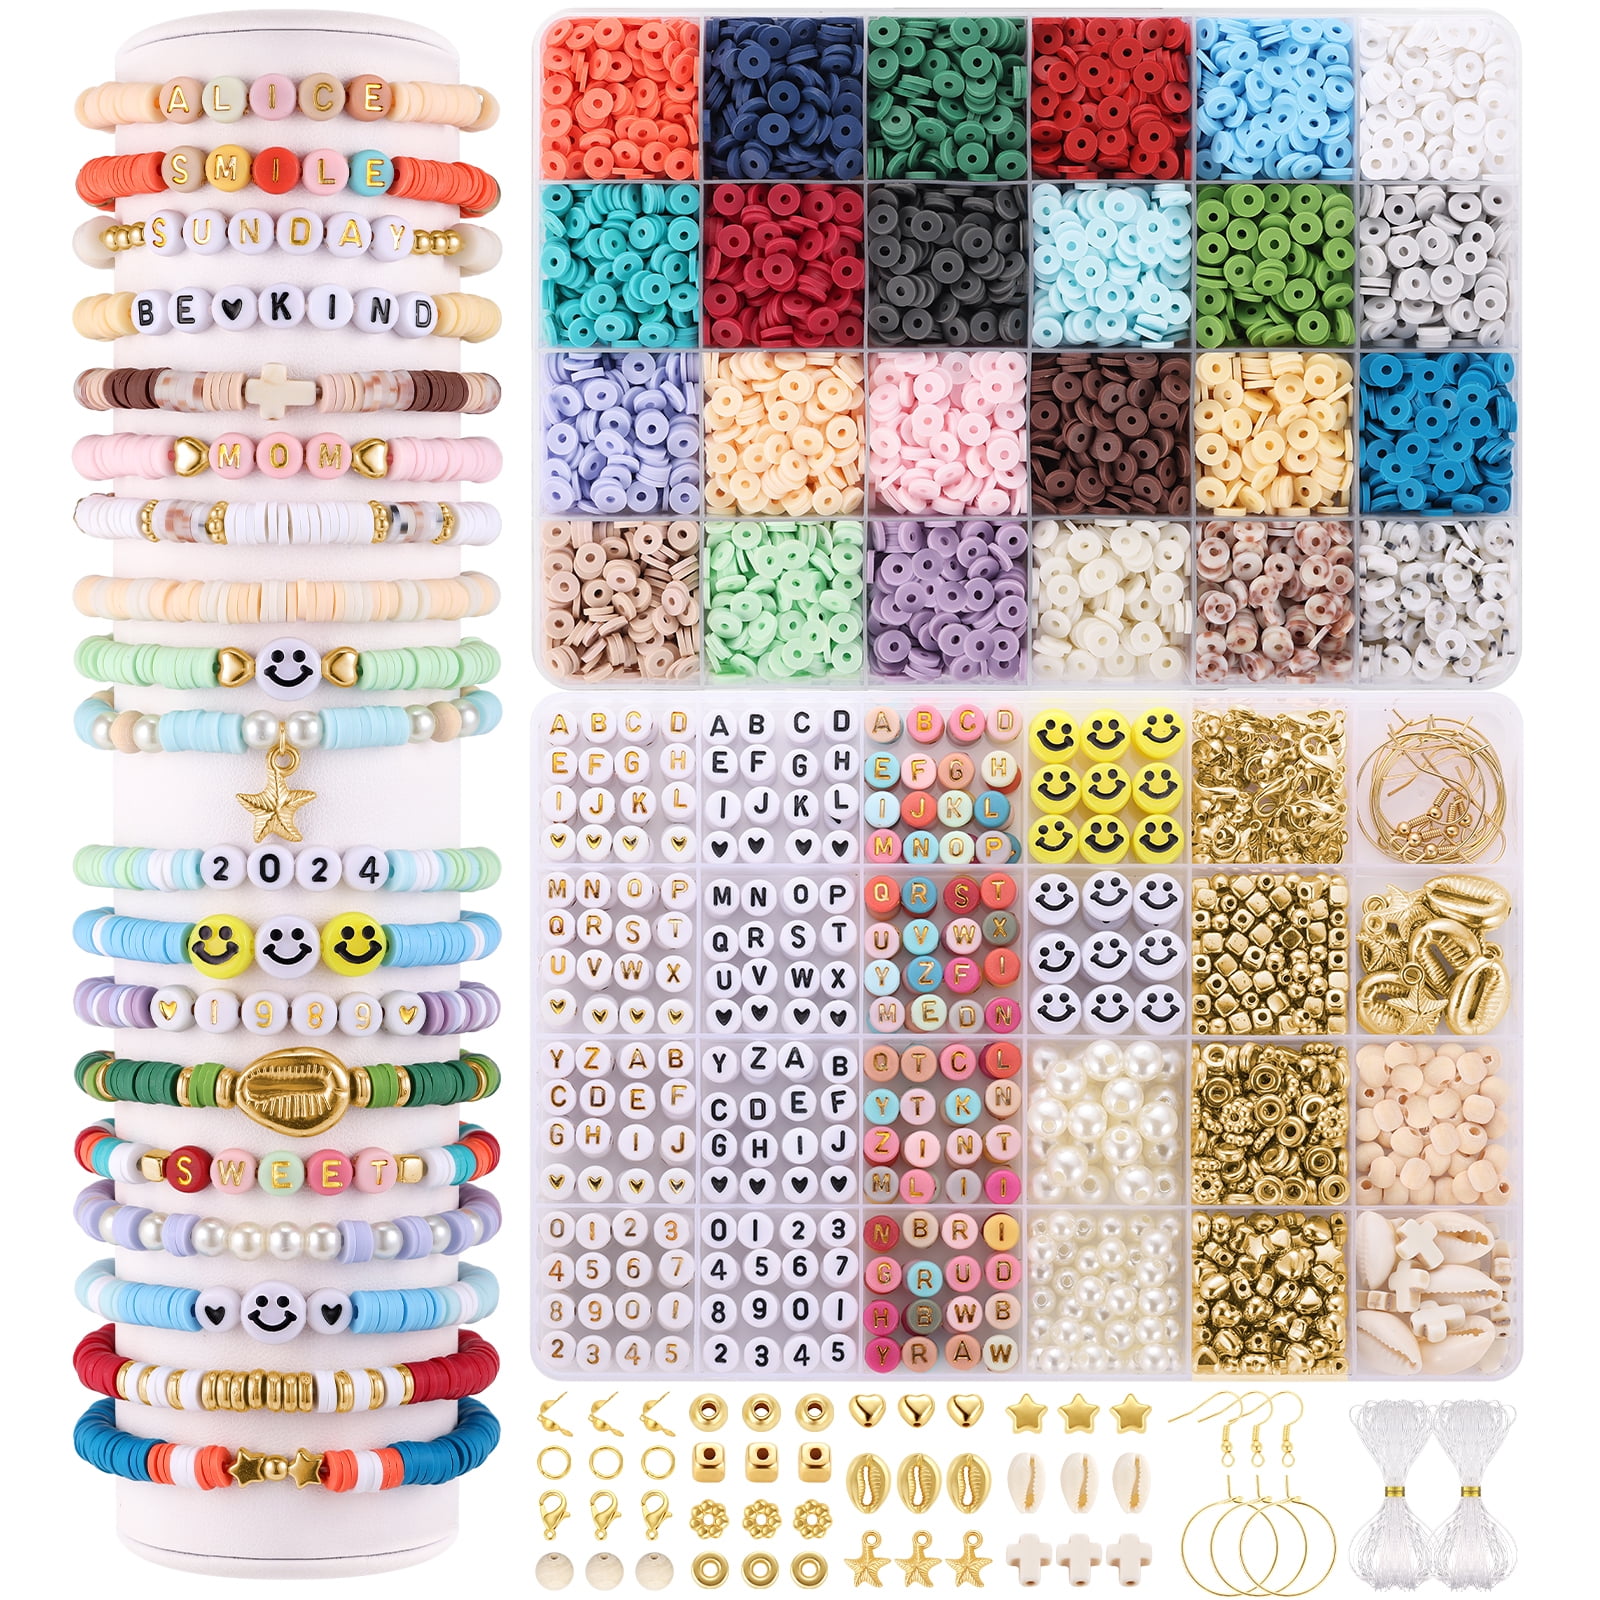 hanru 110 Pcs Charm Bracelets Making Kit for Girls, Thrilez Charm Beads Bracelet Jewelry Kit with Bracelets, Beads, Jewelry Charms Gift Set for Adults Kids